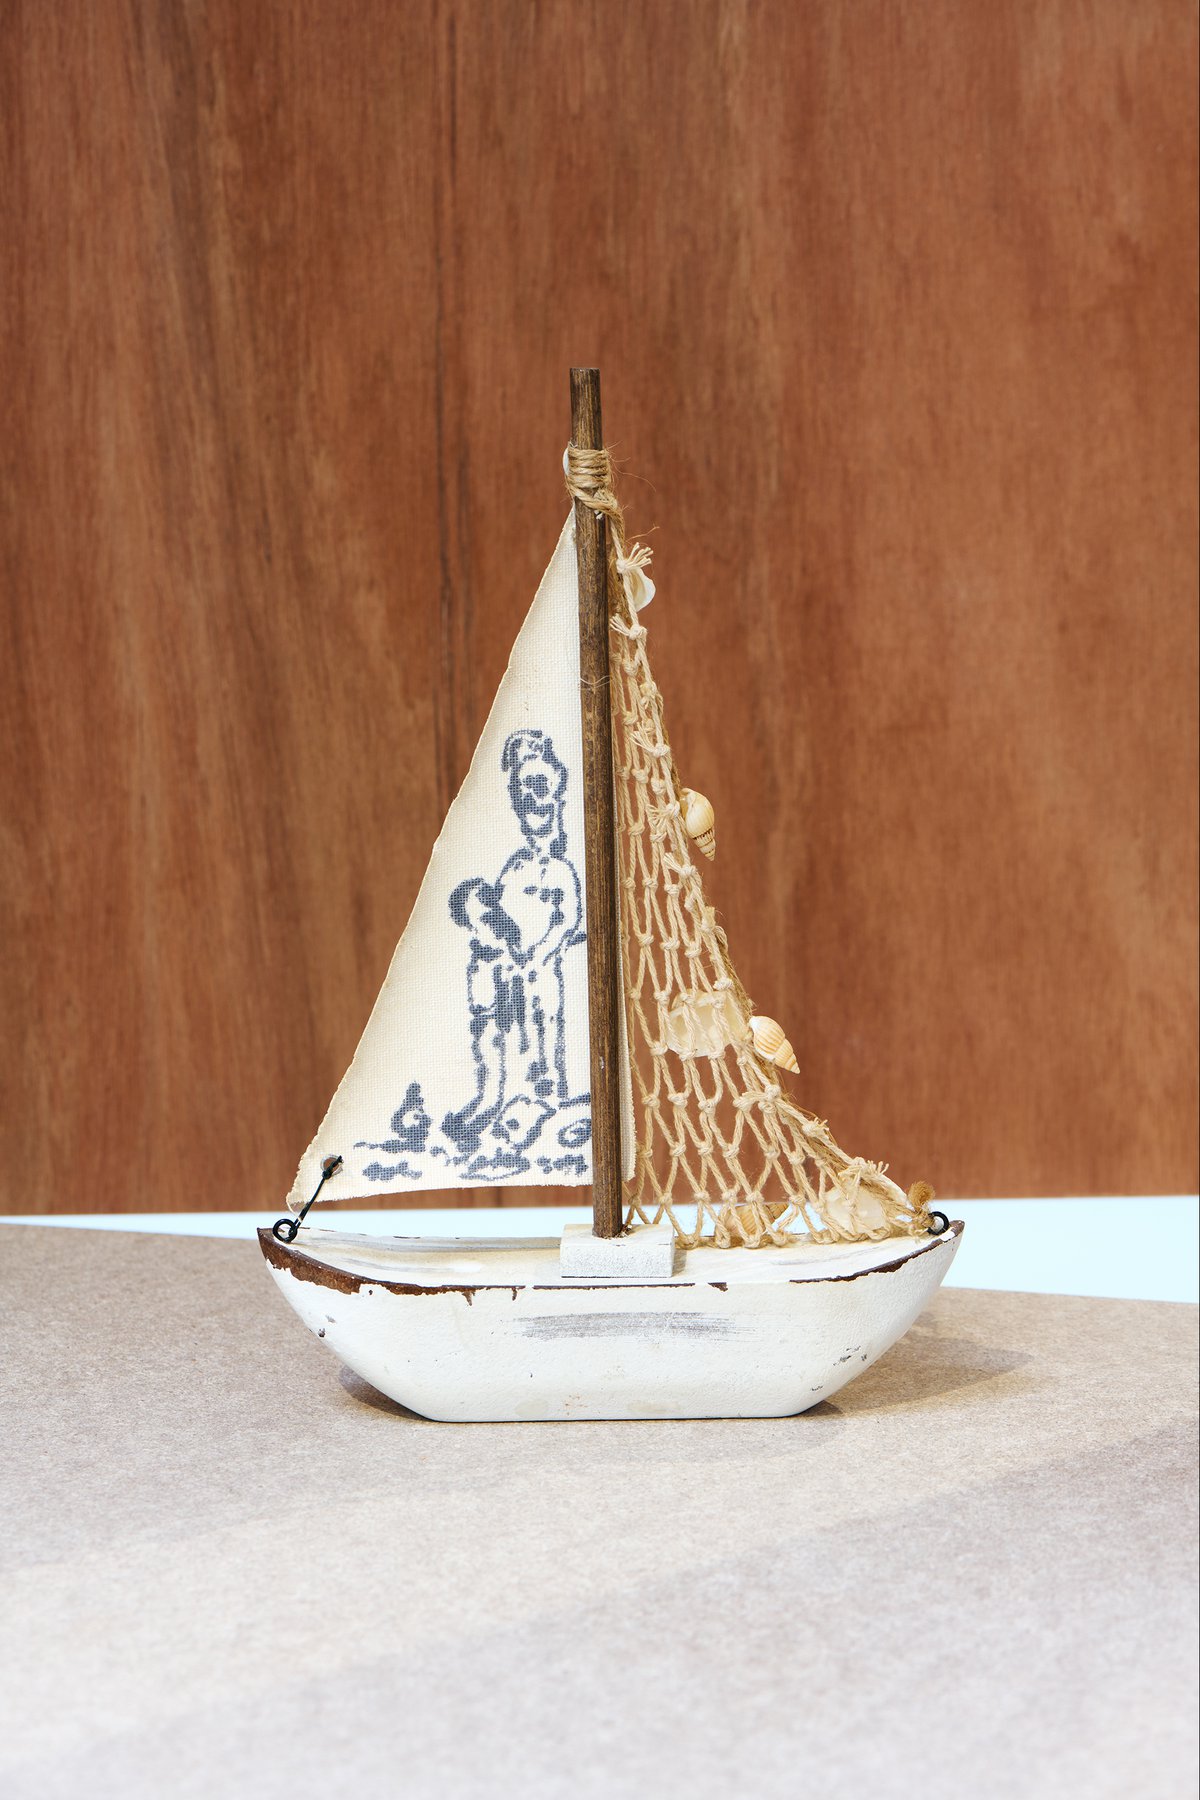 David Medalla, Titel unbekannt, 2017, Tuschestift auf Stoffsegel eines dekorativen Segelbootes, 28,8 x 19,4 x 5,2 cm, Bonner Kunstverein, 2021. Foto: Mareike Tocha.